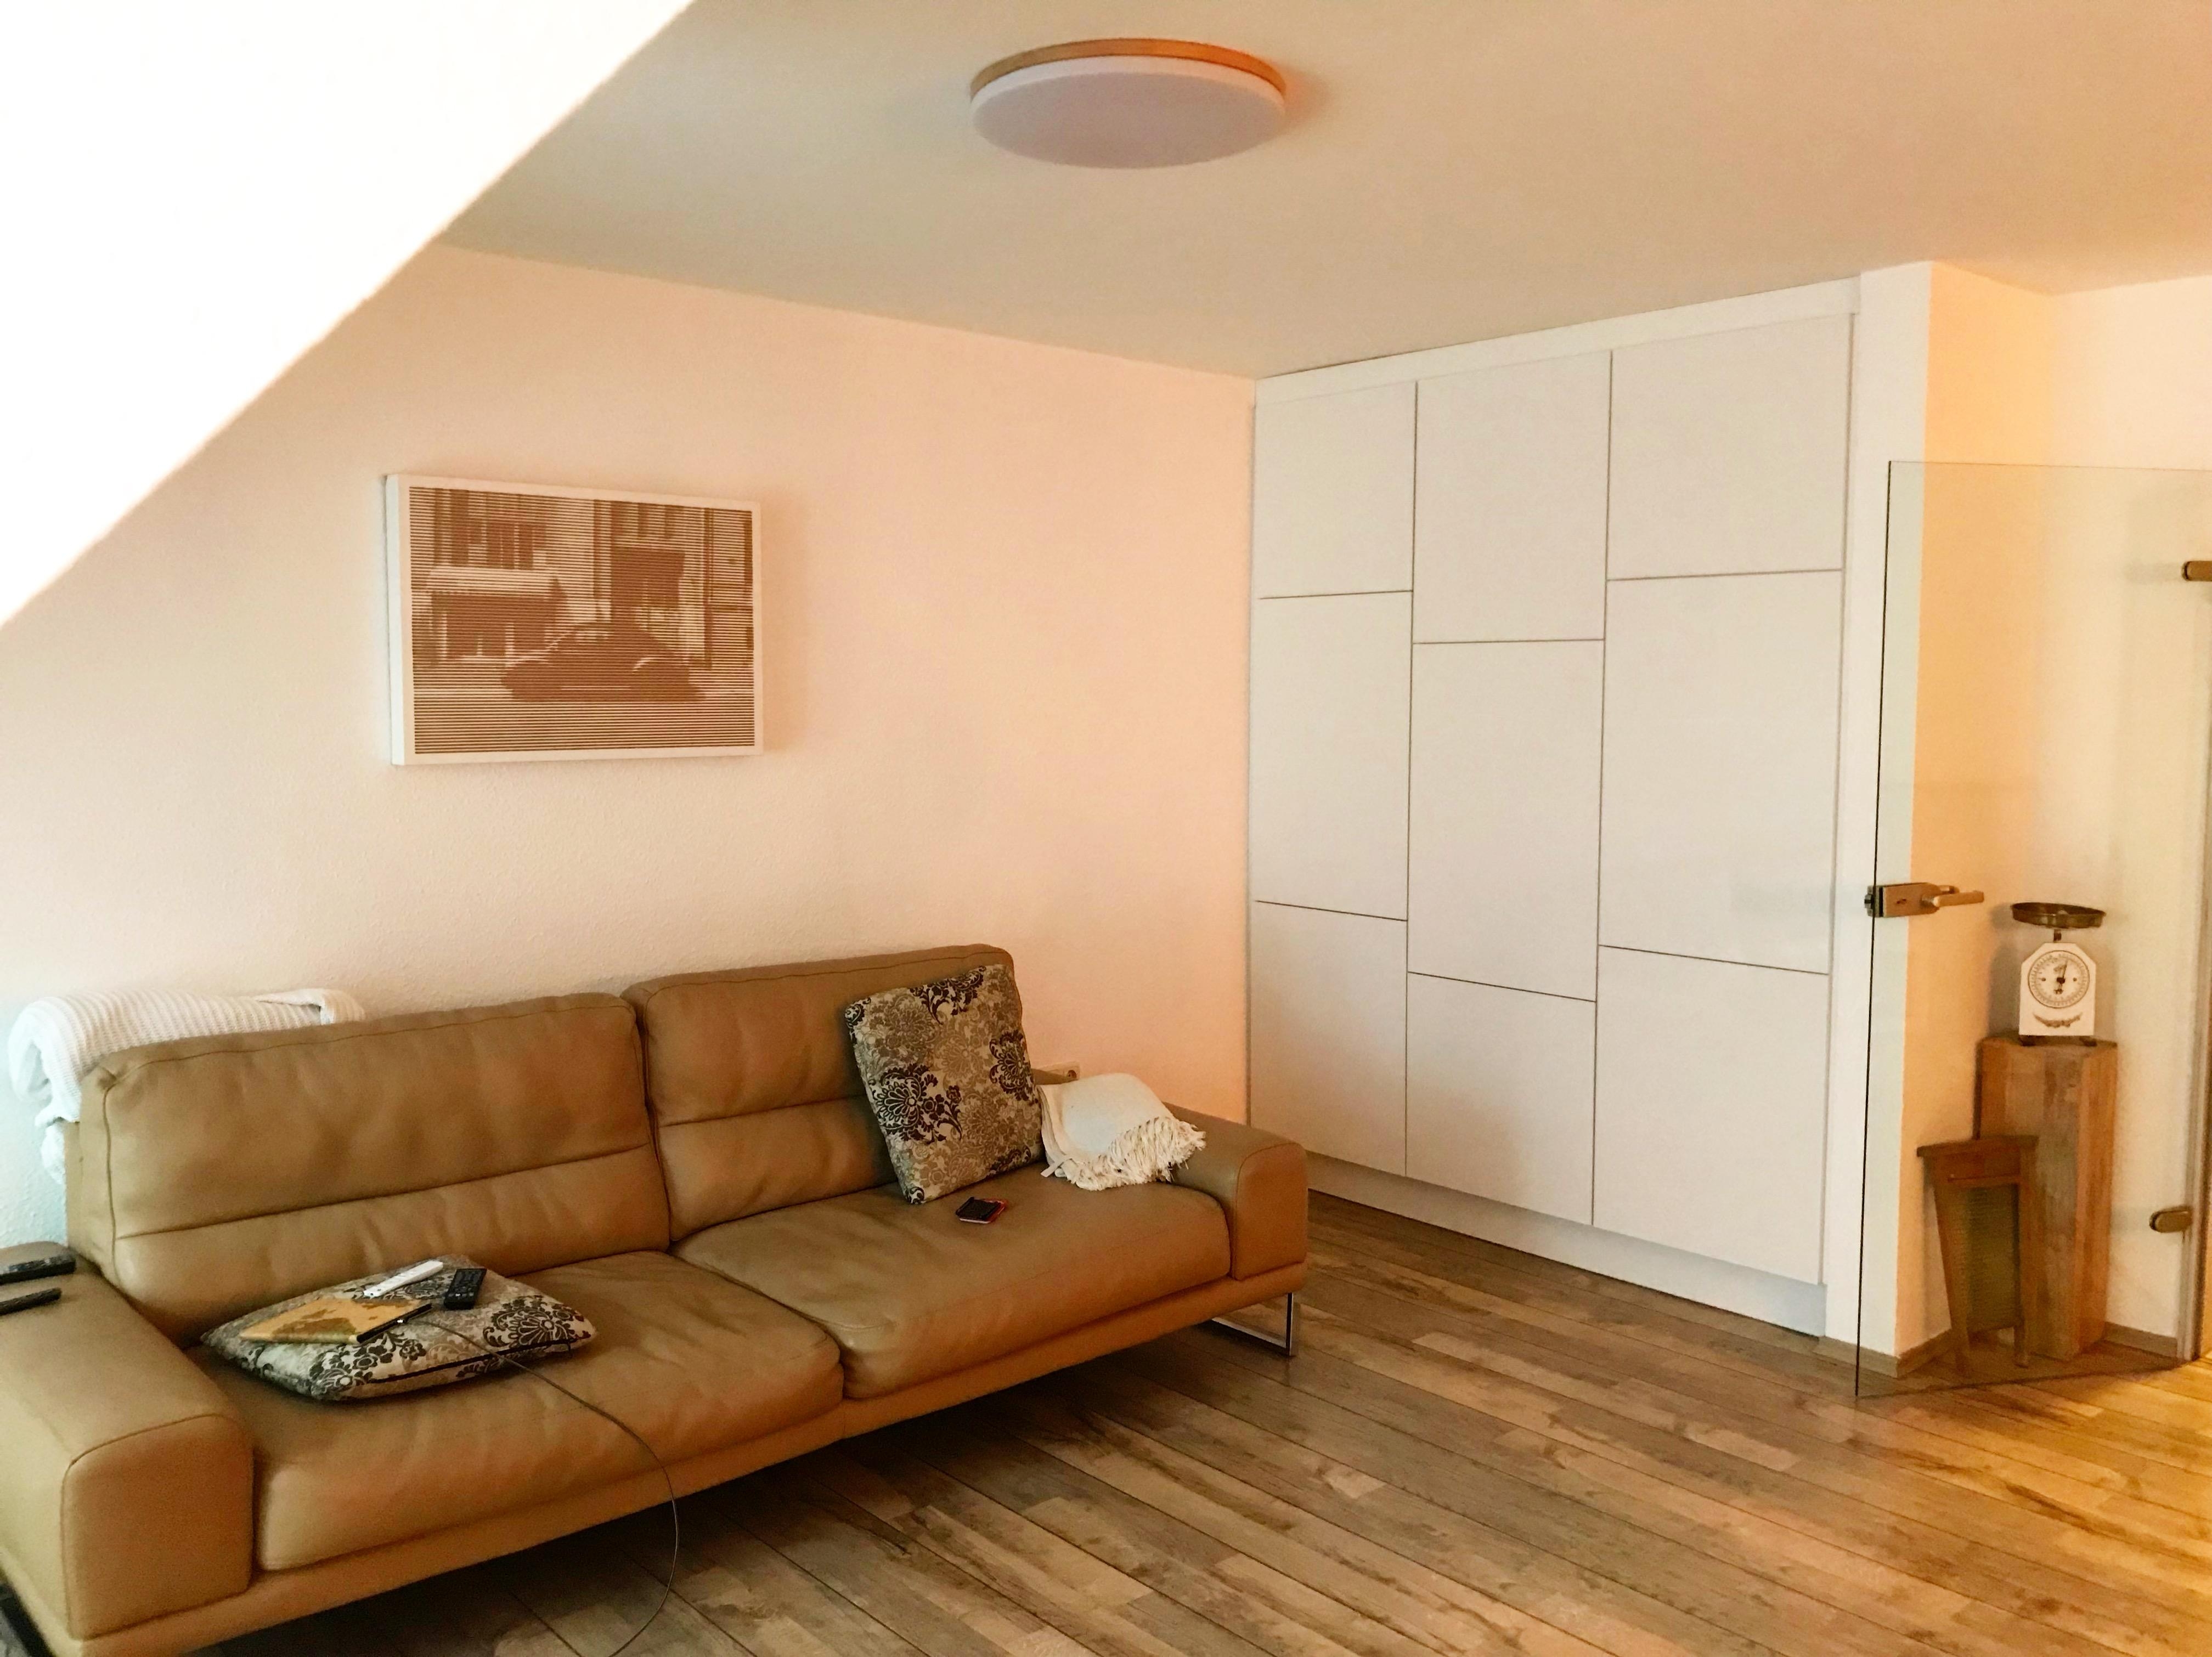 #Stauraumwunder #Einbauschrank und die Niesche im #Wohnzimmer perfekt genutzt #couch 